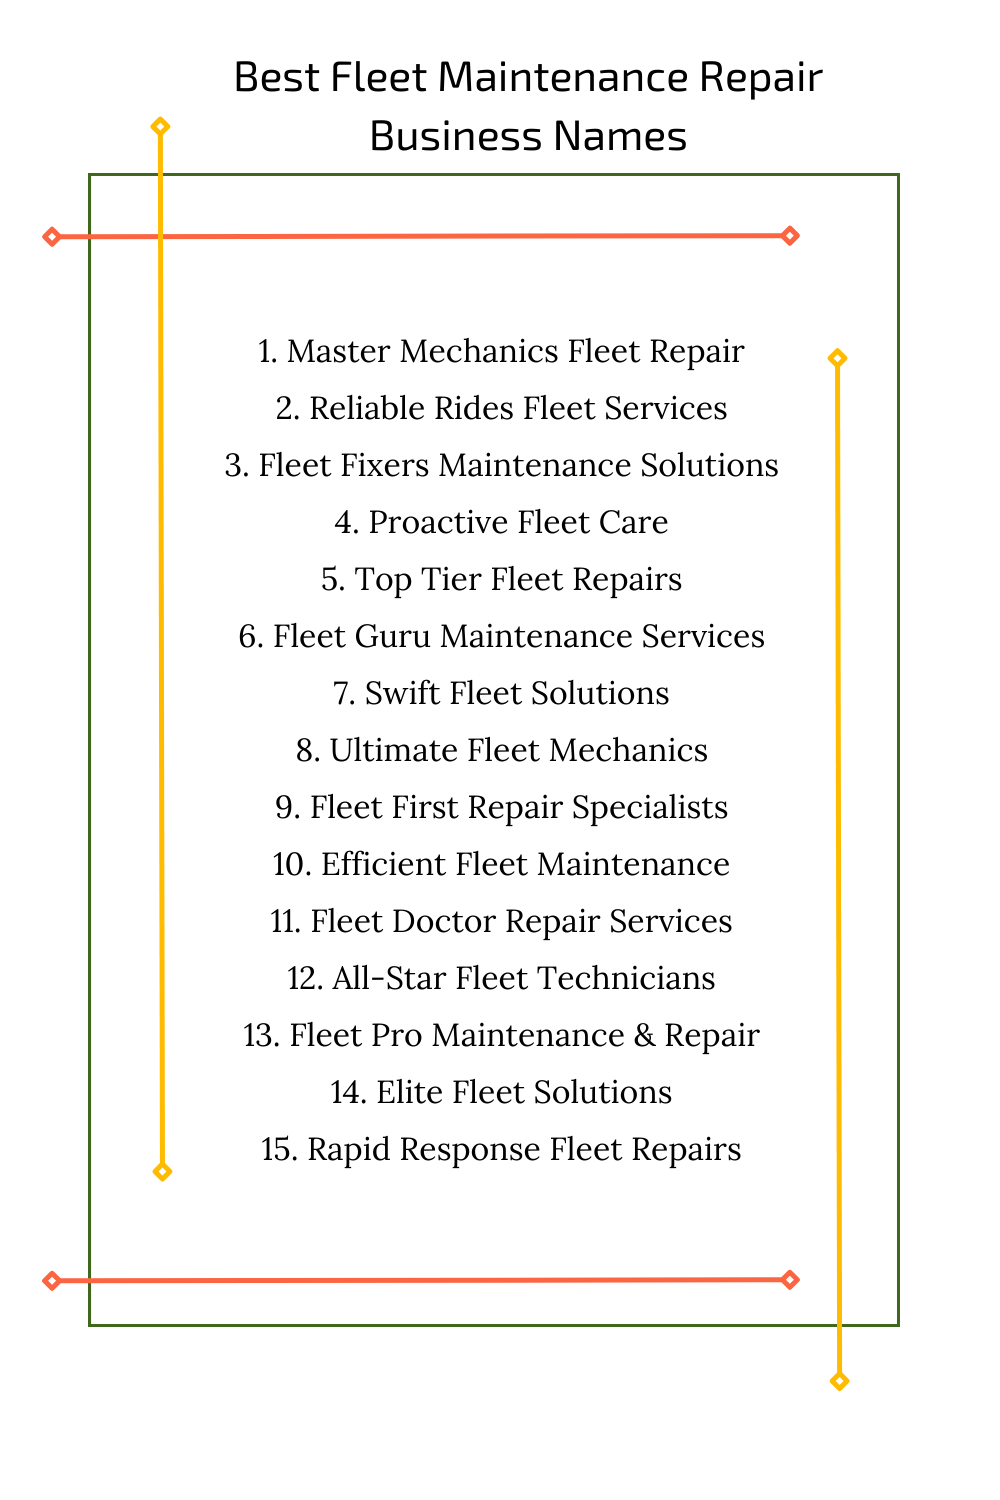 Best Fleet Maintenance Repair Business Names